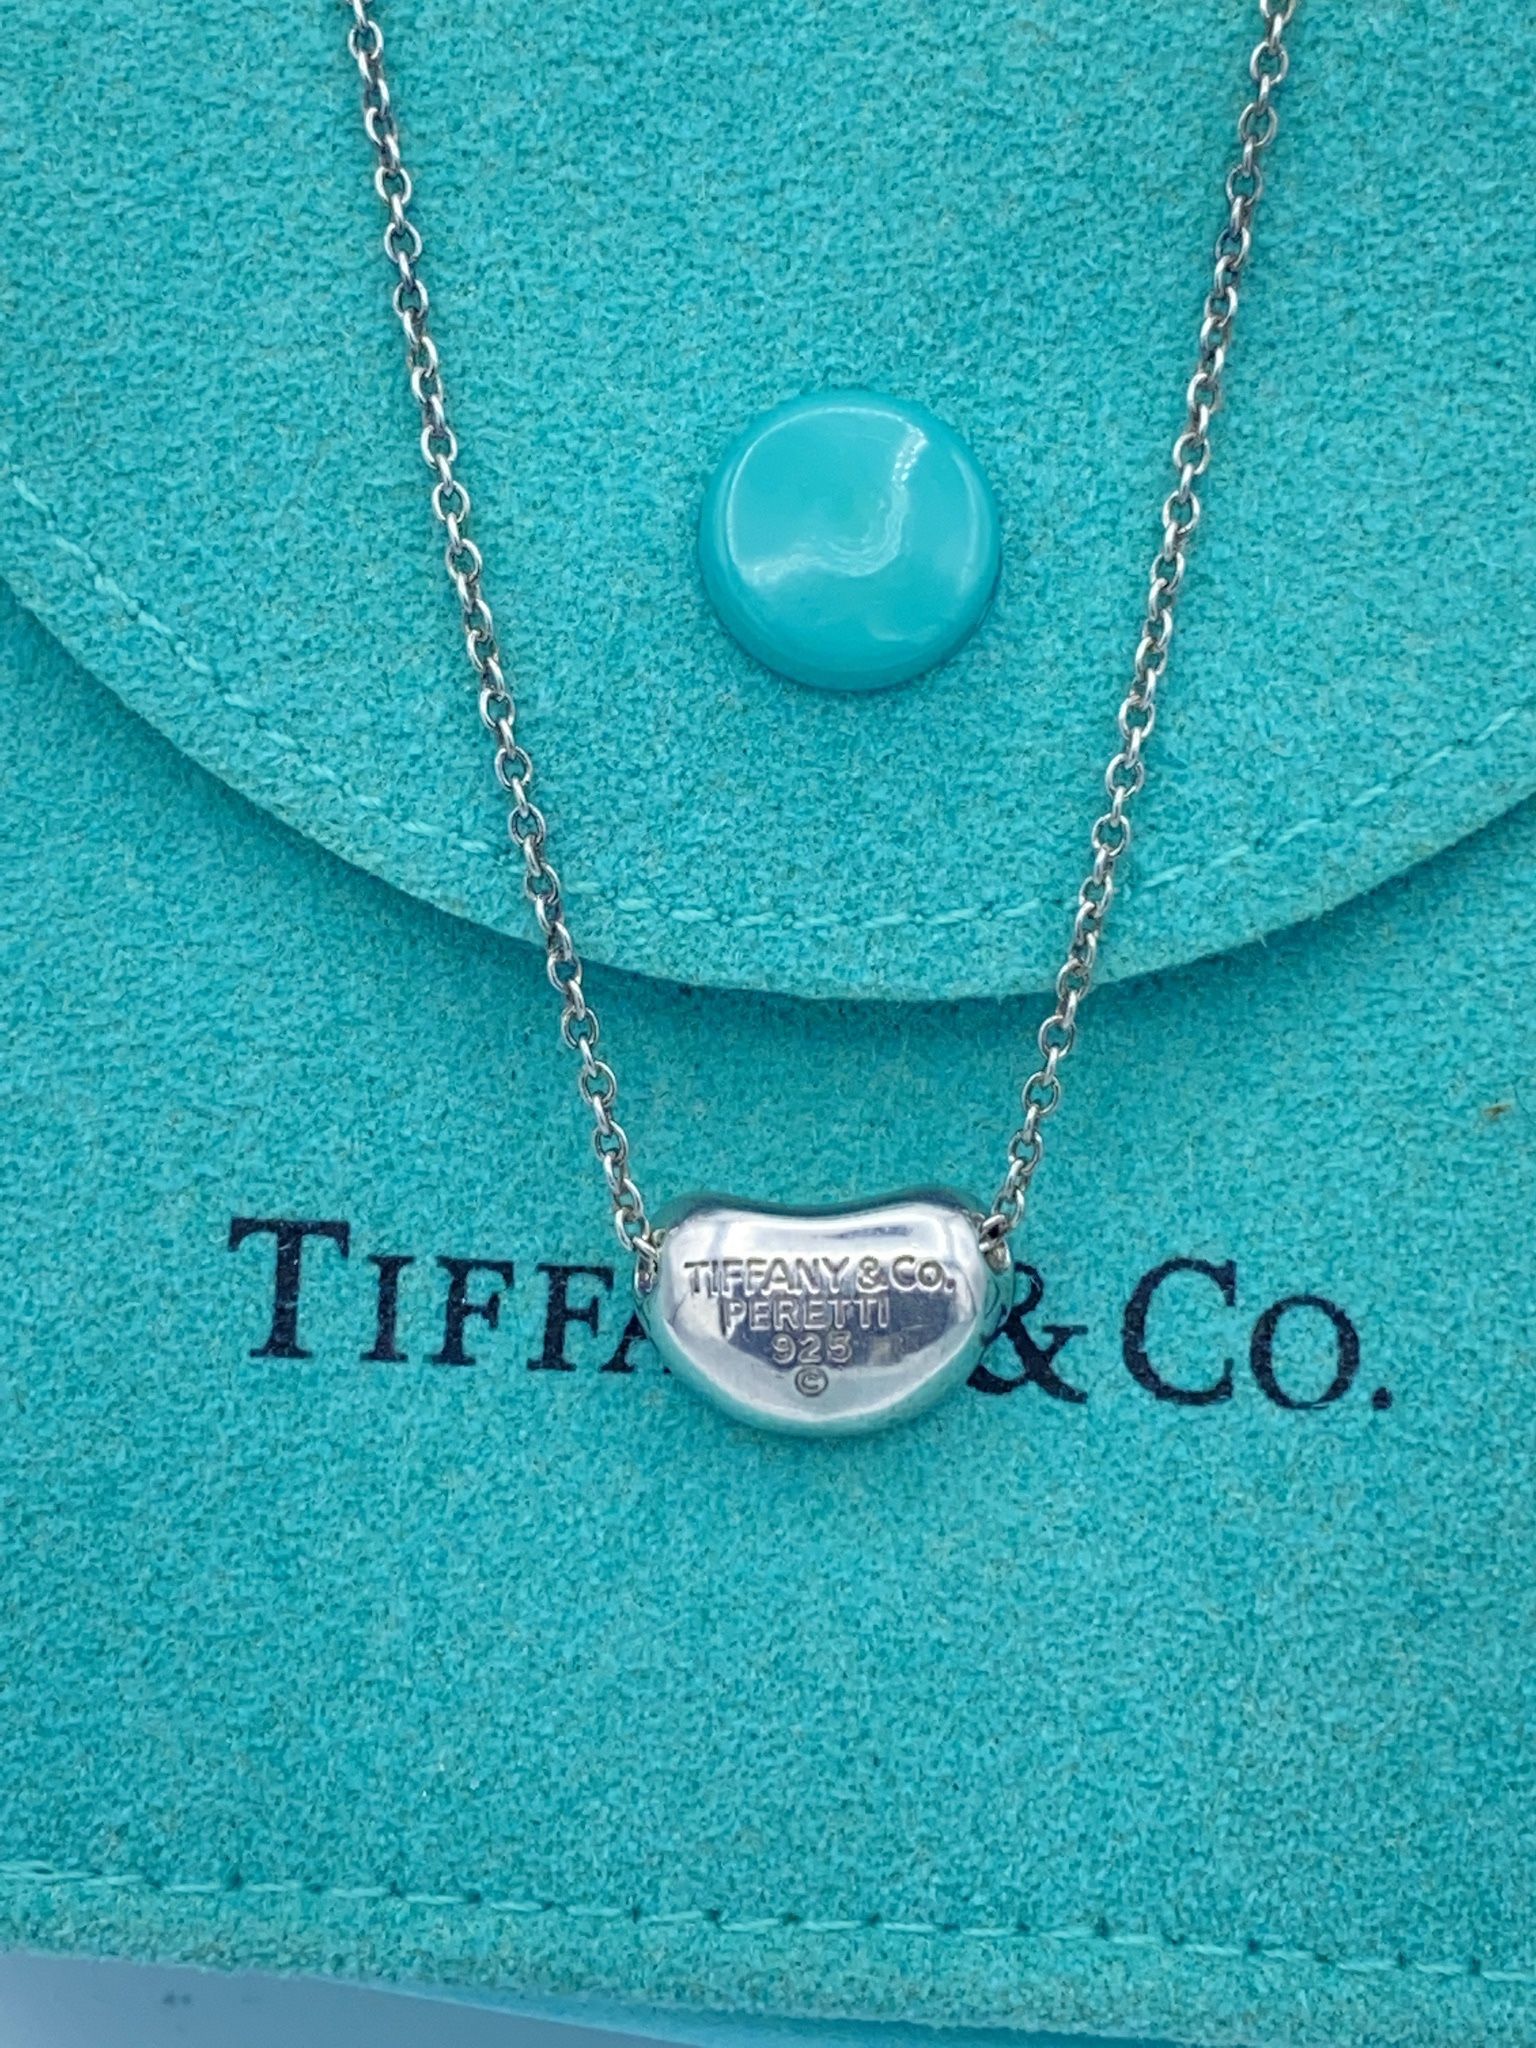 Tiffany  & CO  Elena Peretti Small Bean Pendant Necklaces 16”